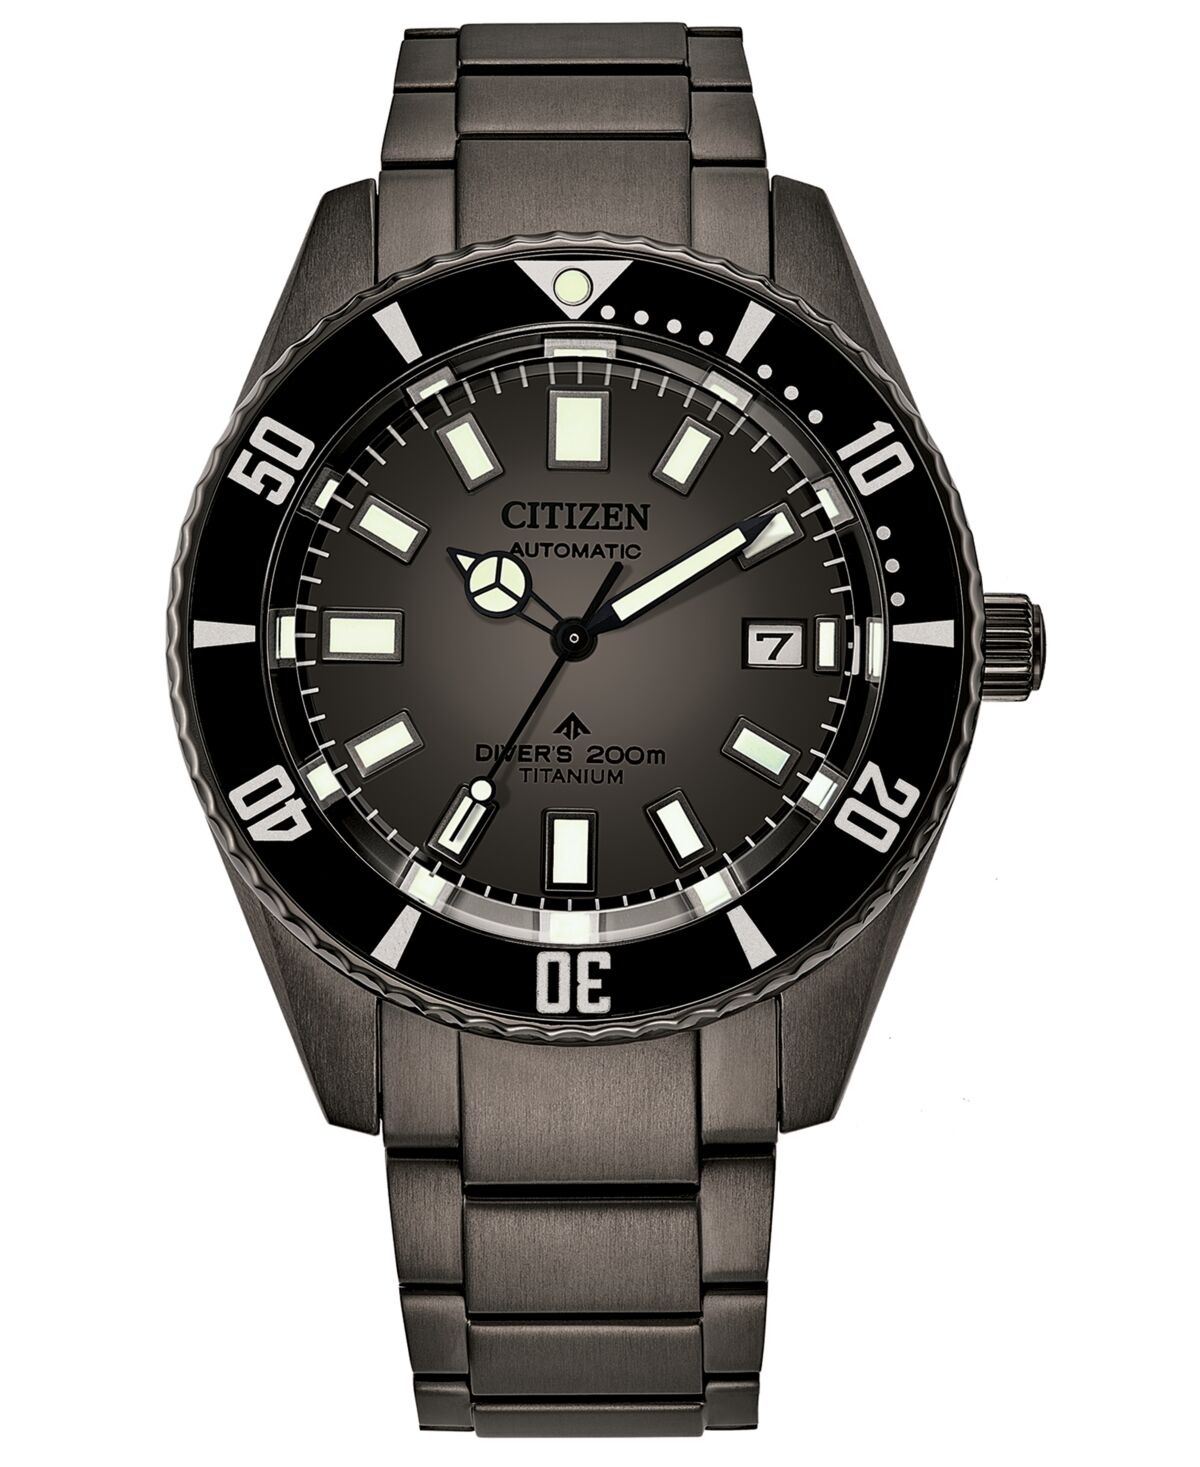 Citizen Men's Automatic Promaster Black Titanium Bracelet Watch 42mm - Black